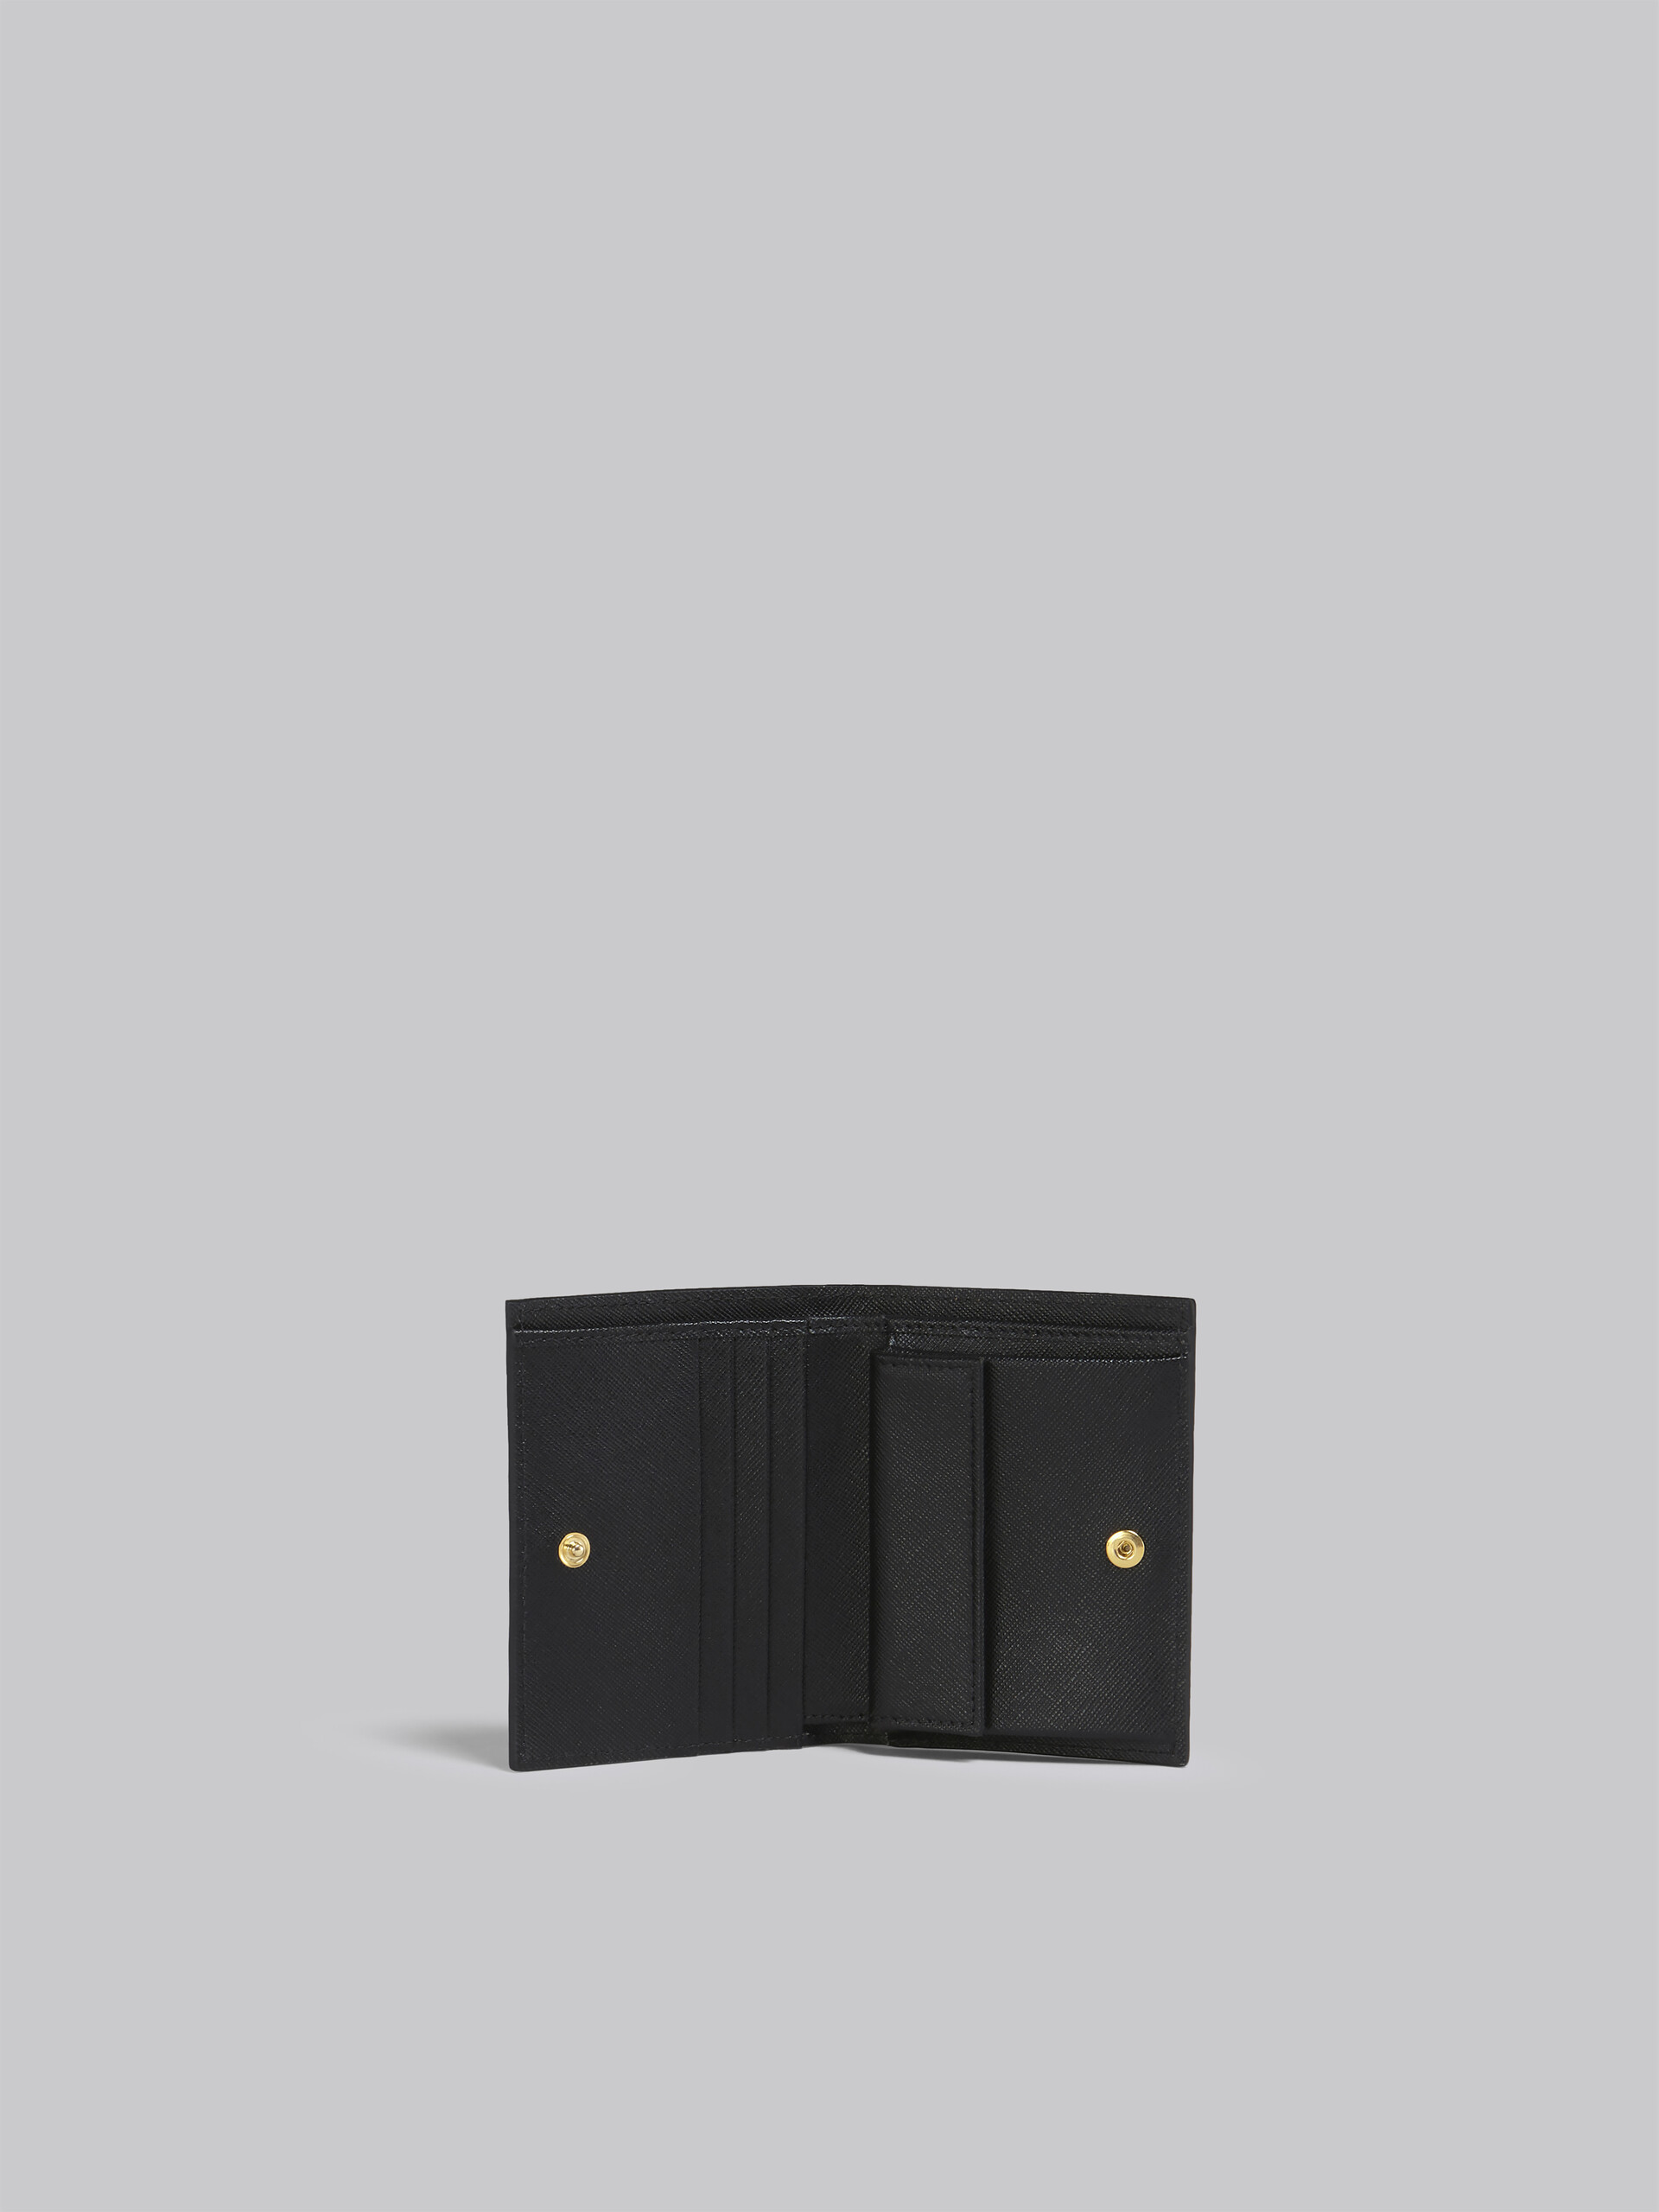 Portafoglio bi-fold in saffiano marrone lilla e nero - Portafogli - Image 2